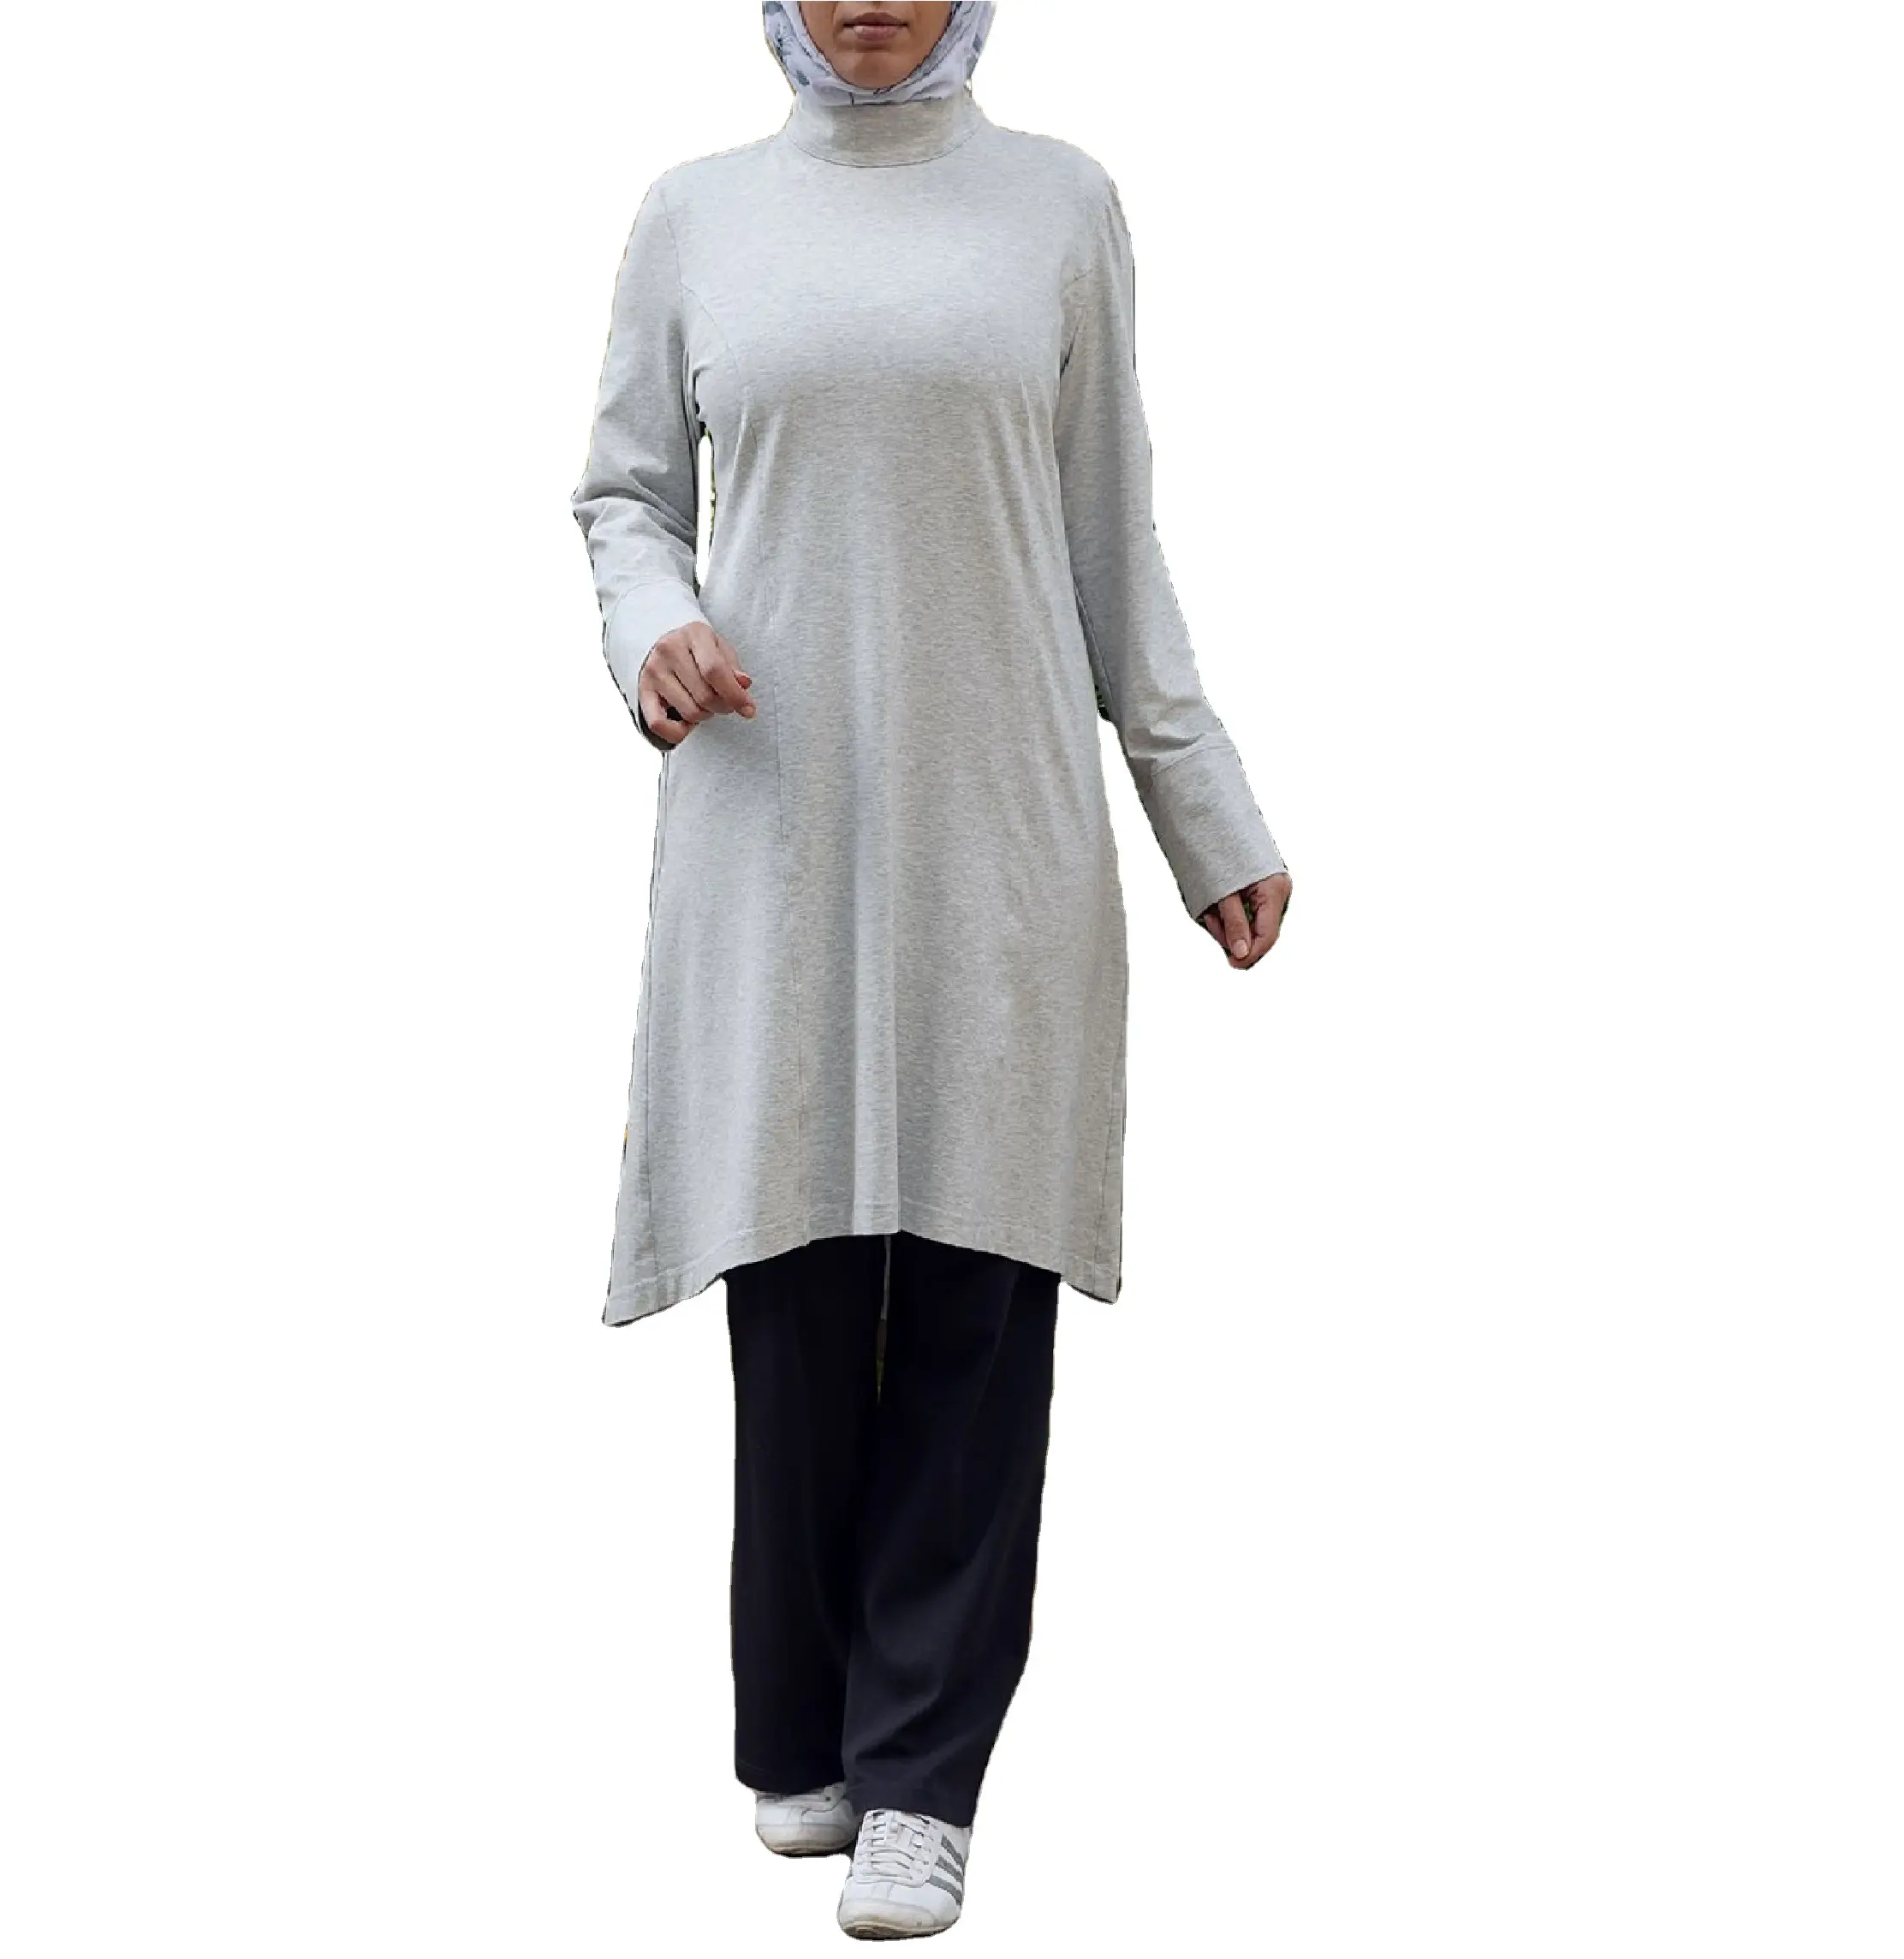 Ropa Étnica islámica para mujer musulmana, camisas largas con dobladillo asimétrico y mangas largas, Hijab con cremallera, Túnica de entrenamiento para correr